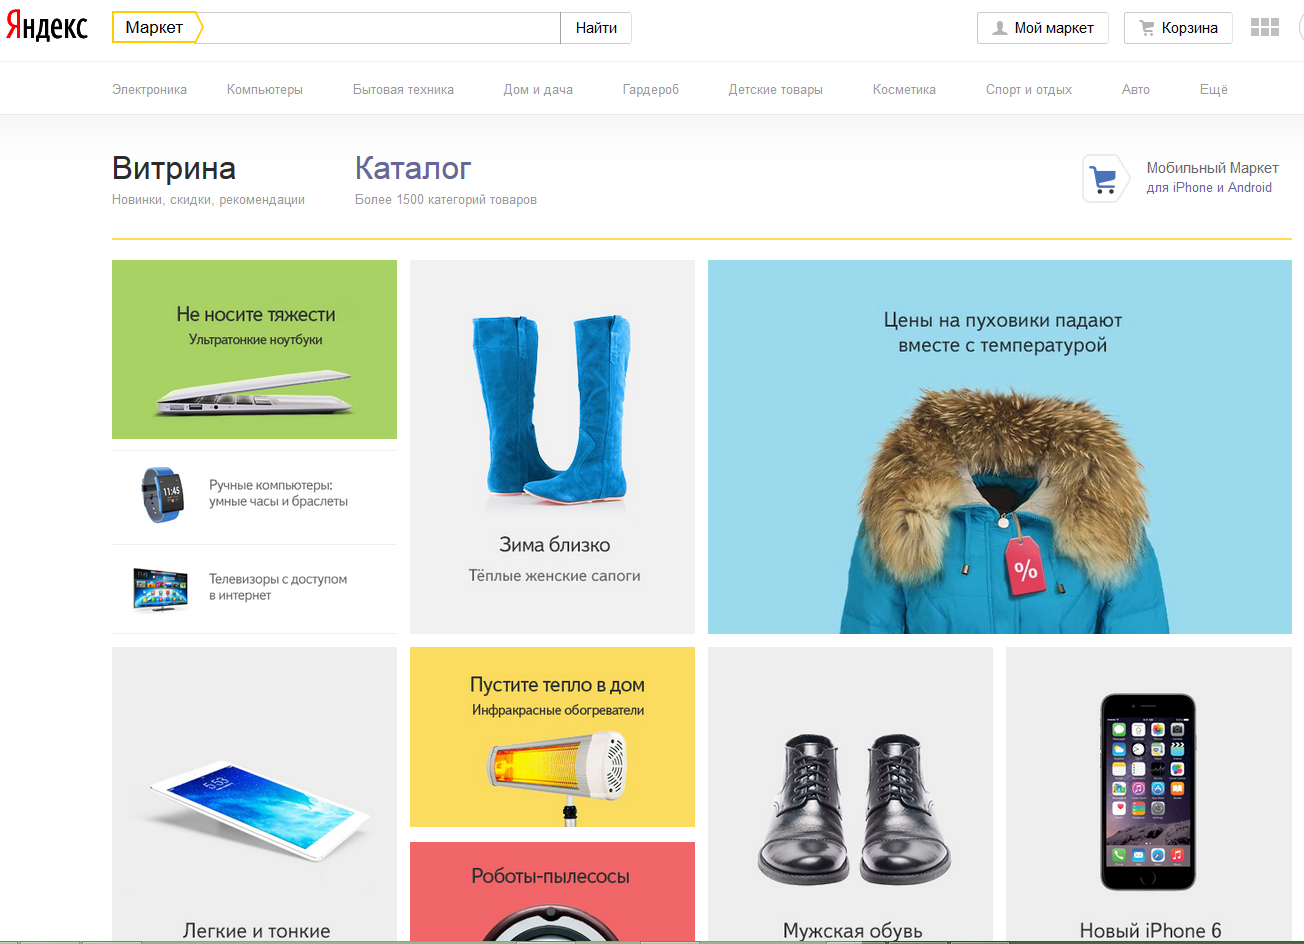 Яндекс.Маркет обновил дизайн Главной - 1